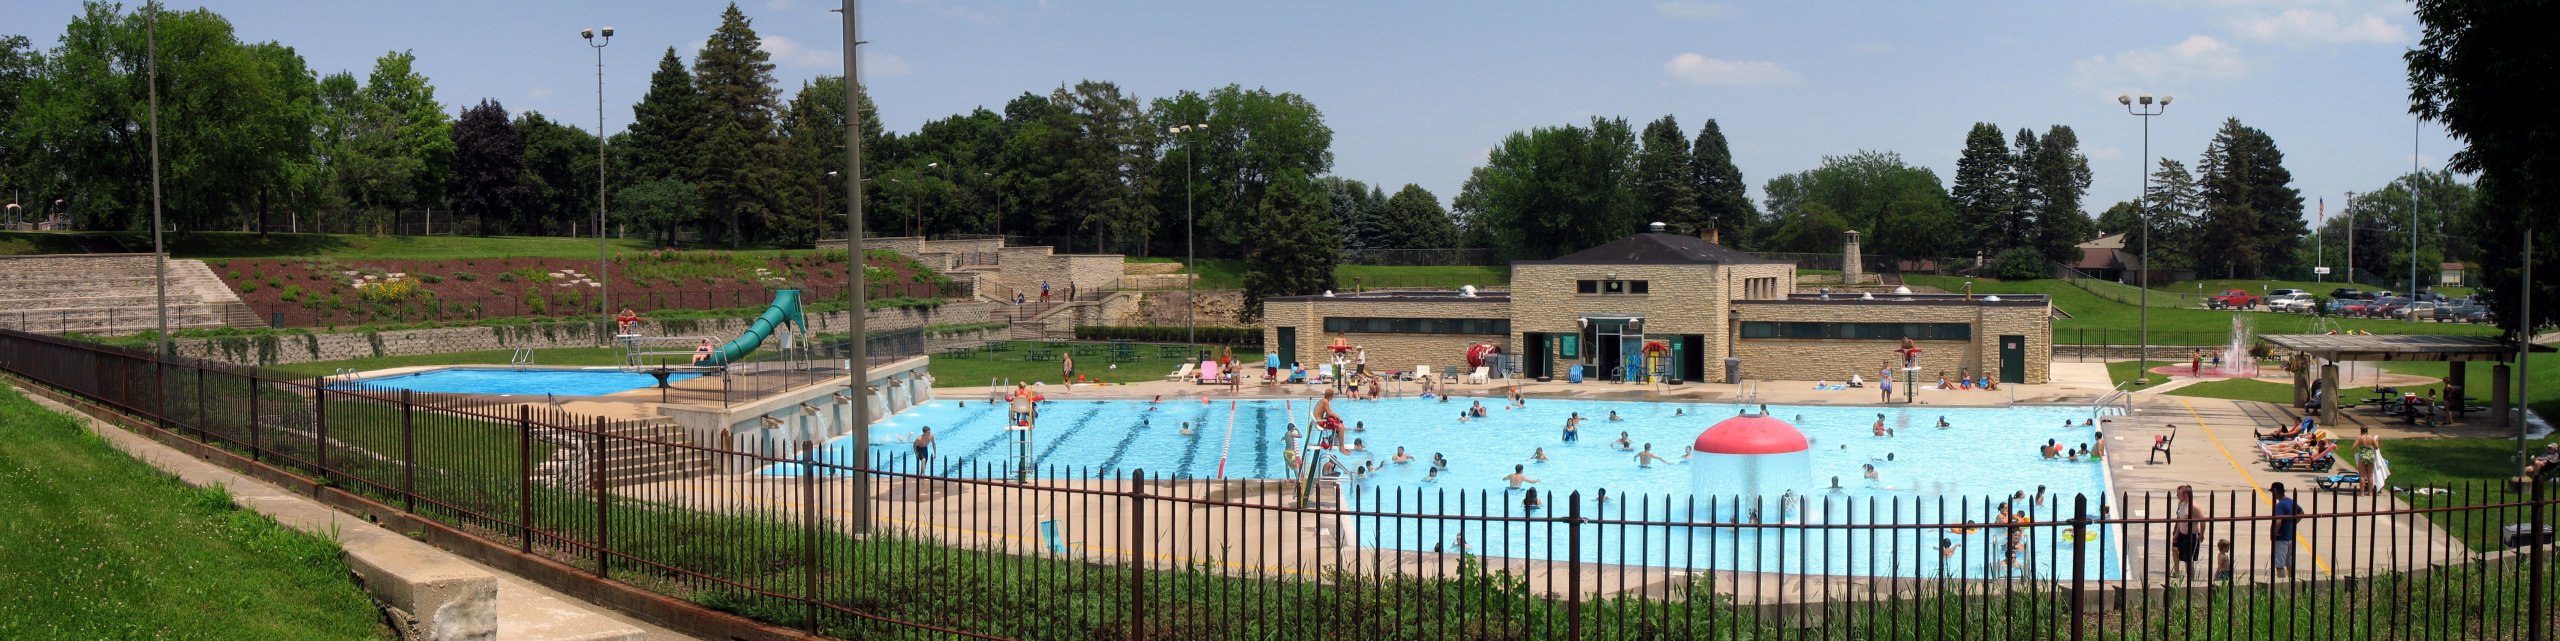 krueger pool - Fun Things To Do With Kids in Beloit WI